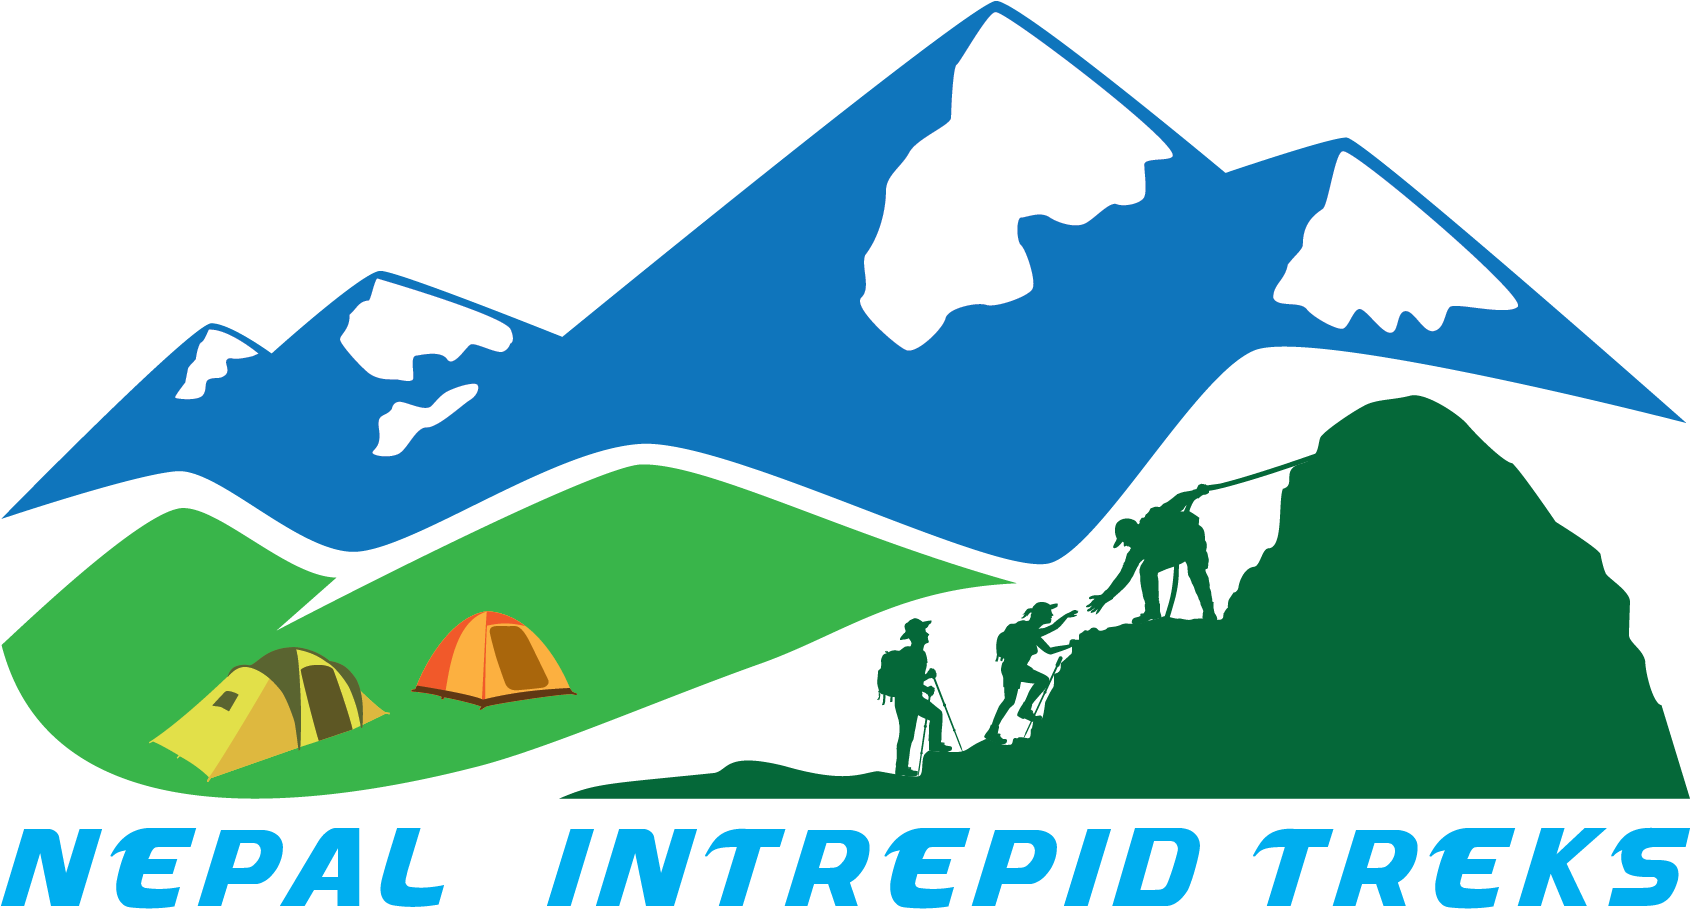 Intrepid Treks Nepal - Intrepid Treks Nepal (1692x924)